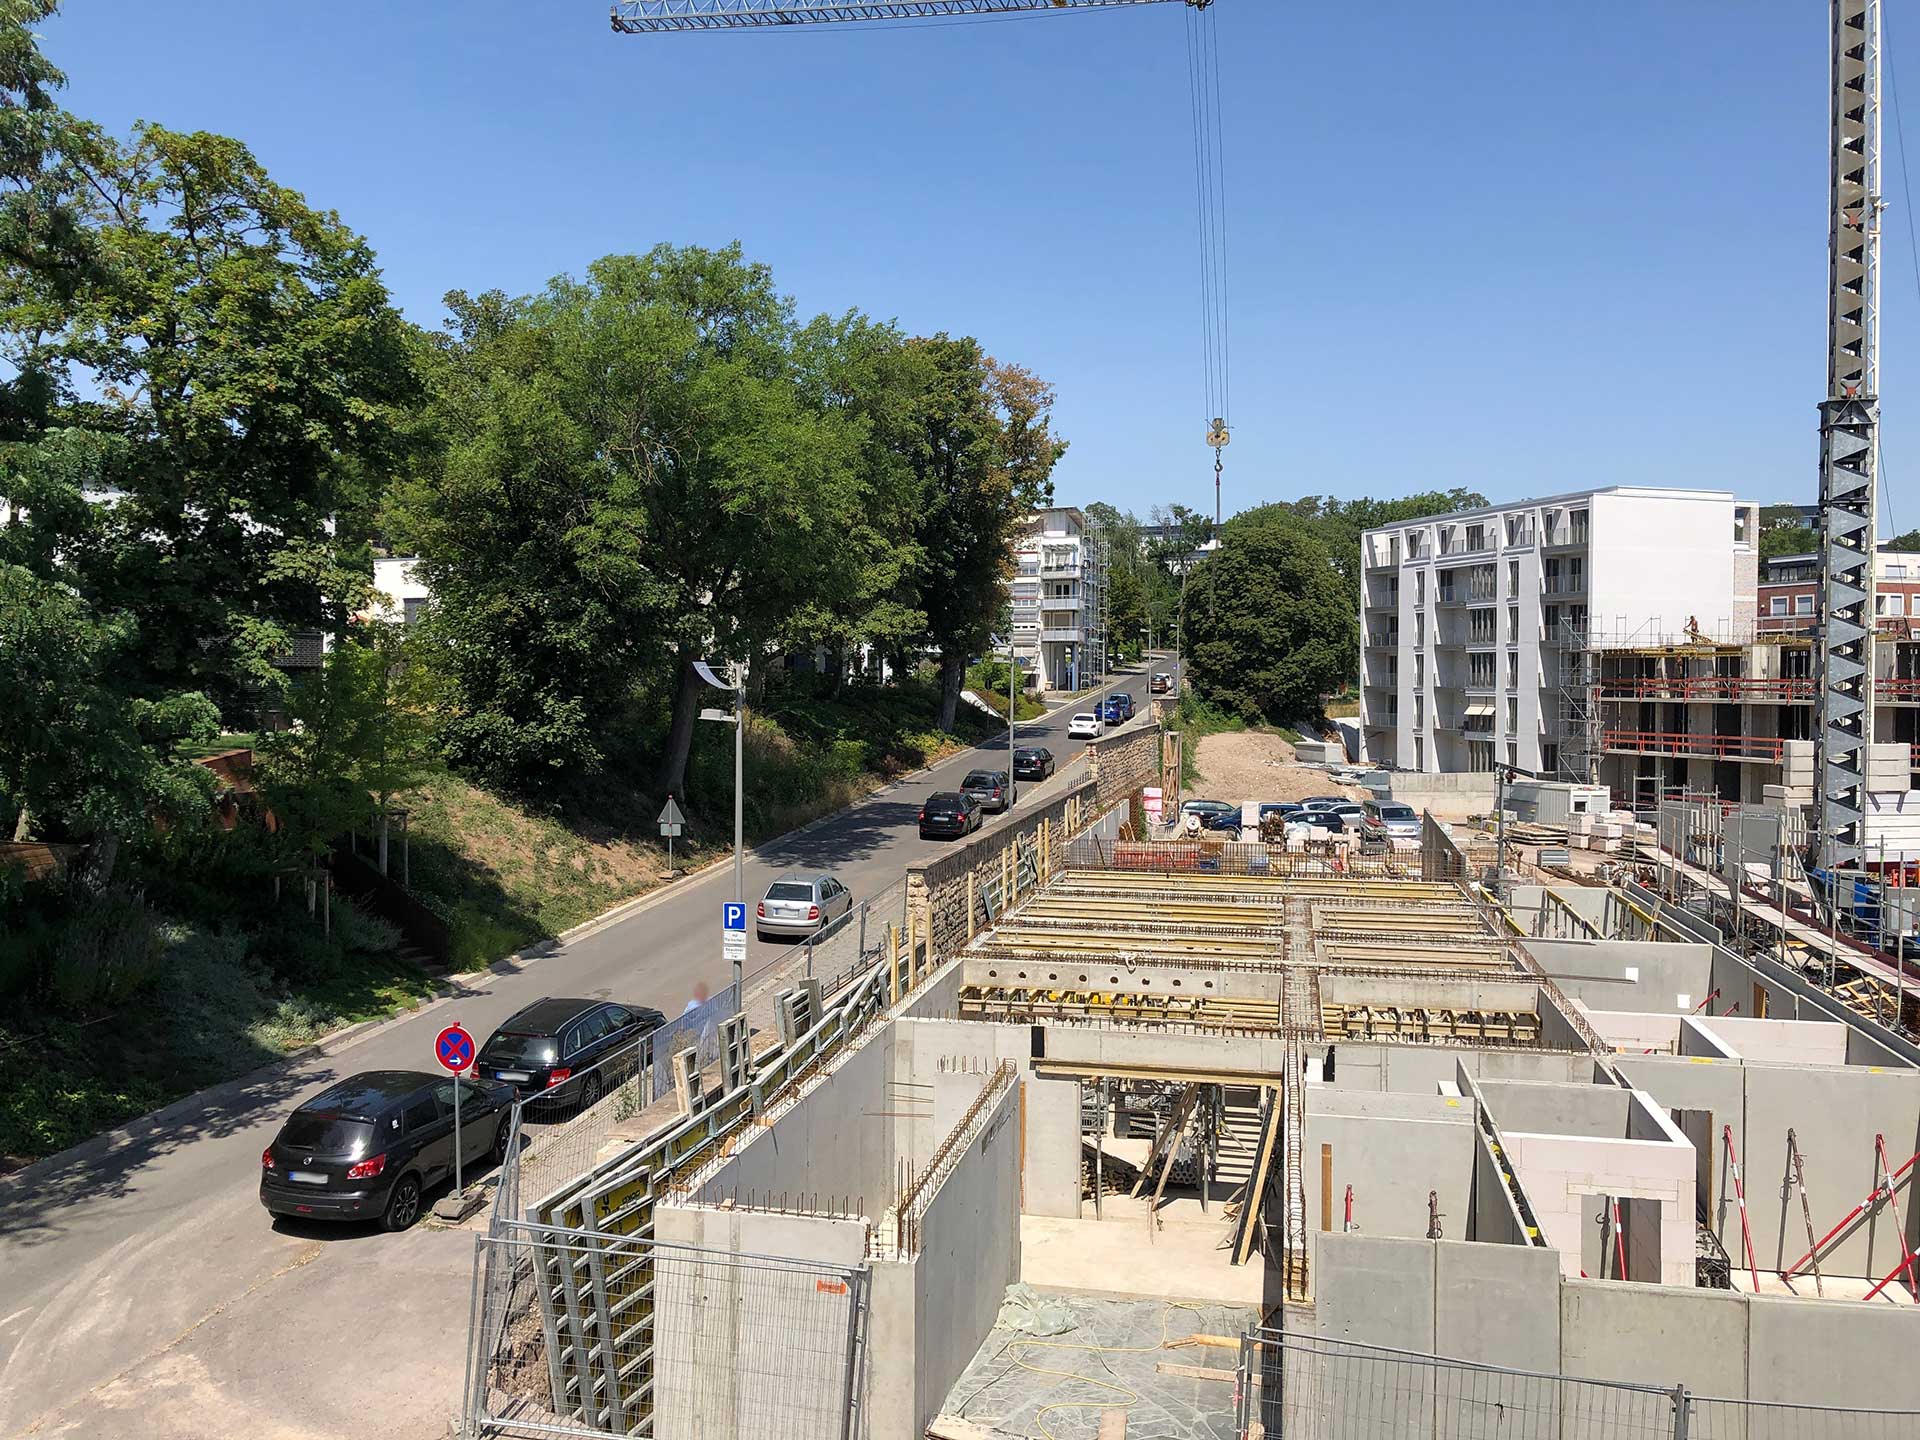 Baustart für das neue Mehrfamilienhaus im Erfurter Brühl ist erfolgt